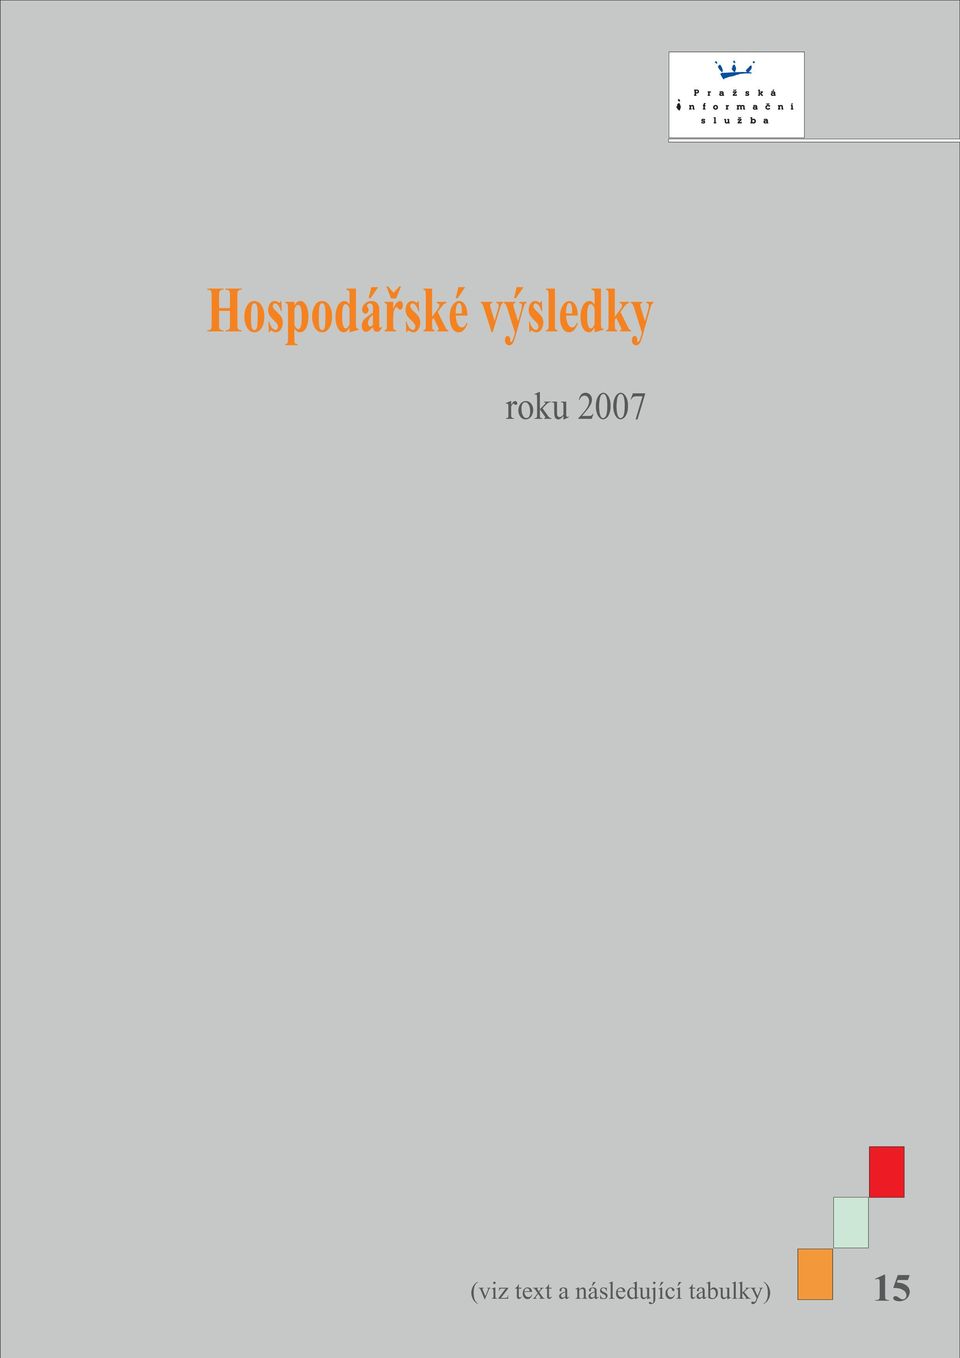 2007 (viz text a